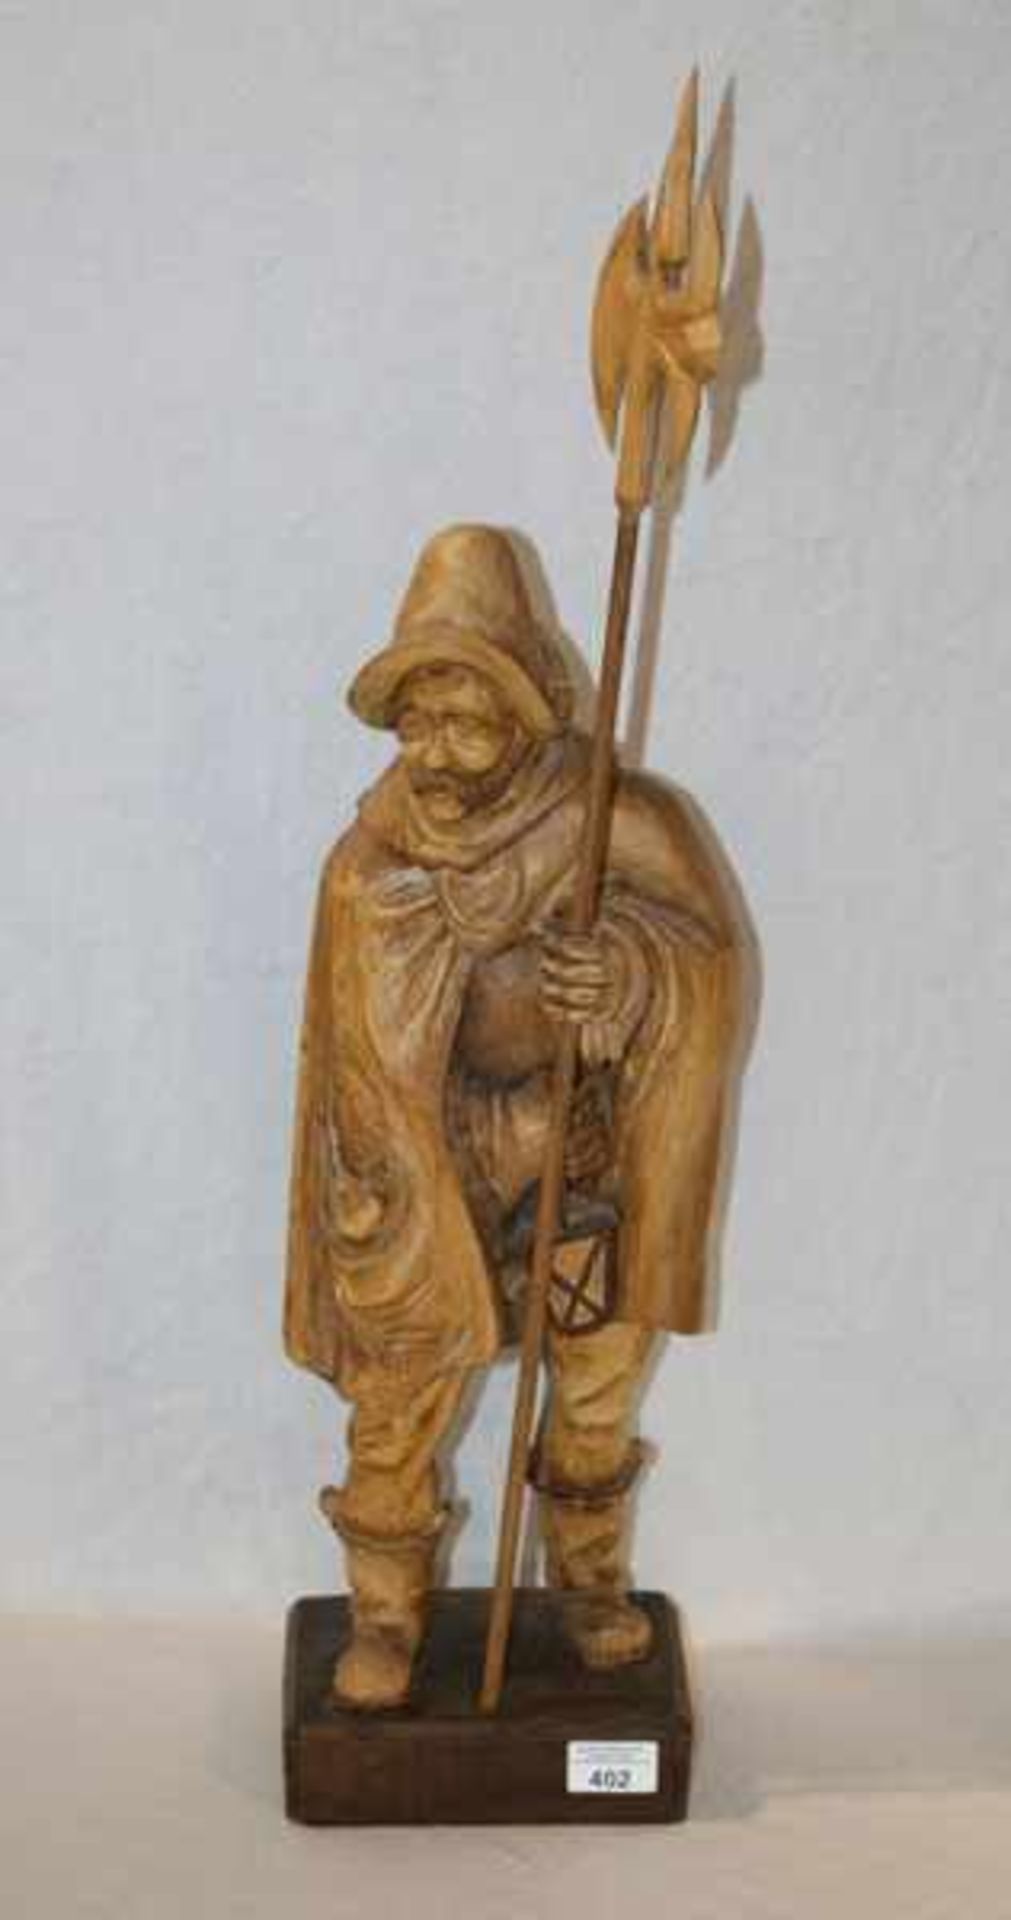 Holzfiguren Skulptur 'Nachtwächter', rückseitig mit Monogramm EH, dunkel gebeizt, H 74 cm, B 18